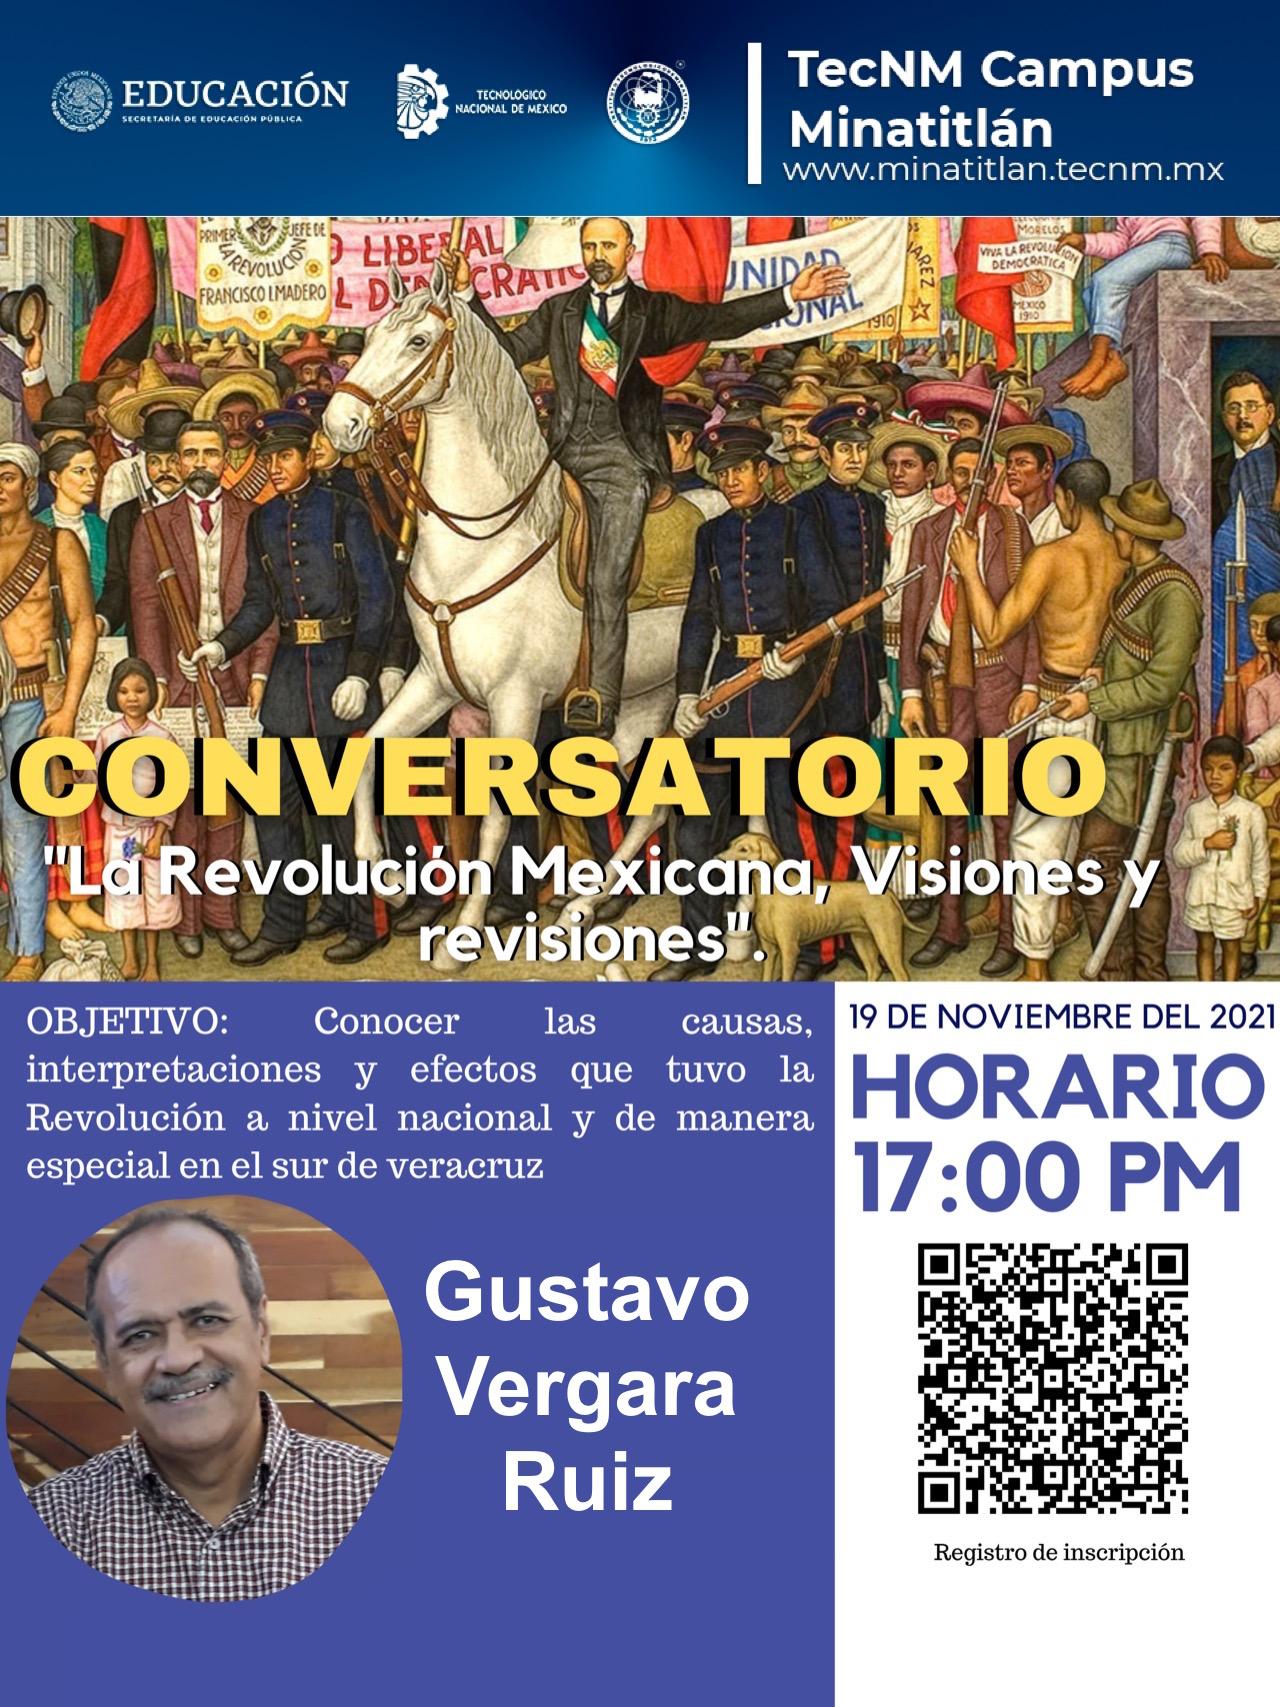 CONVERSATORIO “LA REVOLUCIÓN MEXICANA: VISIONES Y REVISIONES”